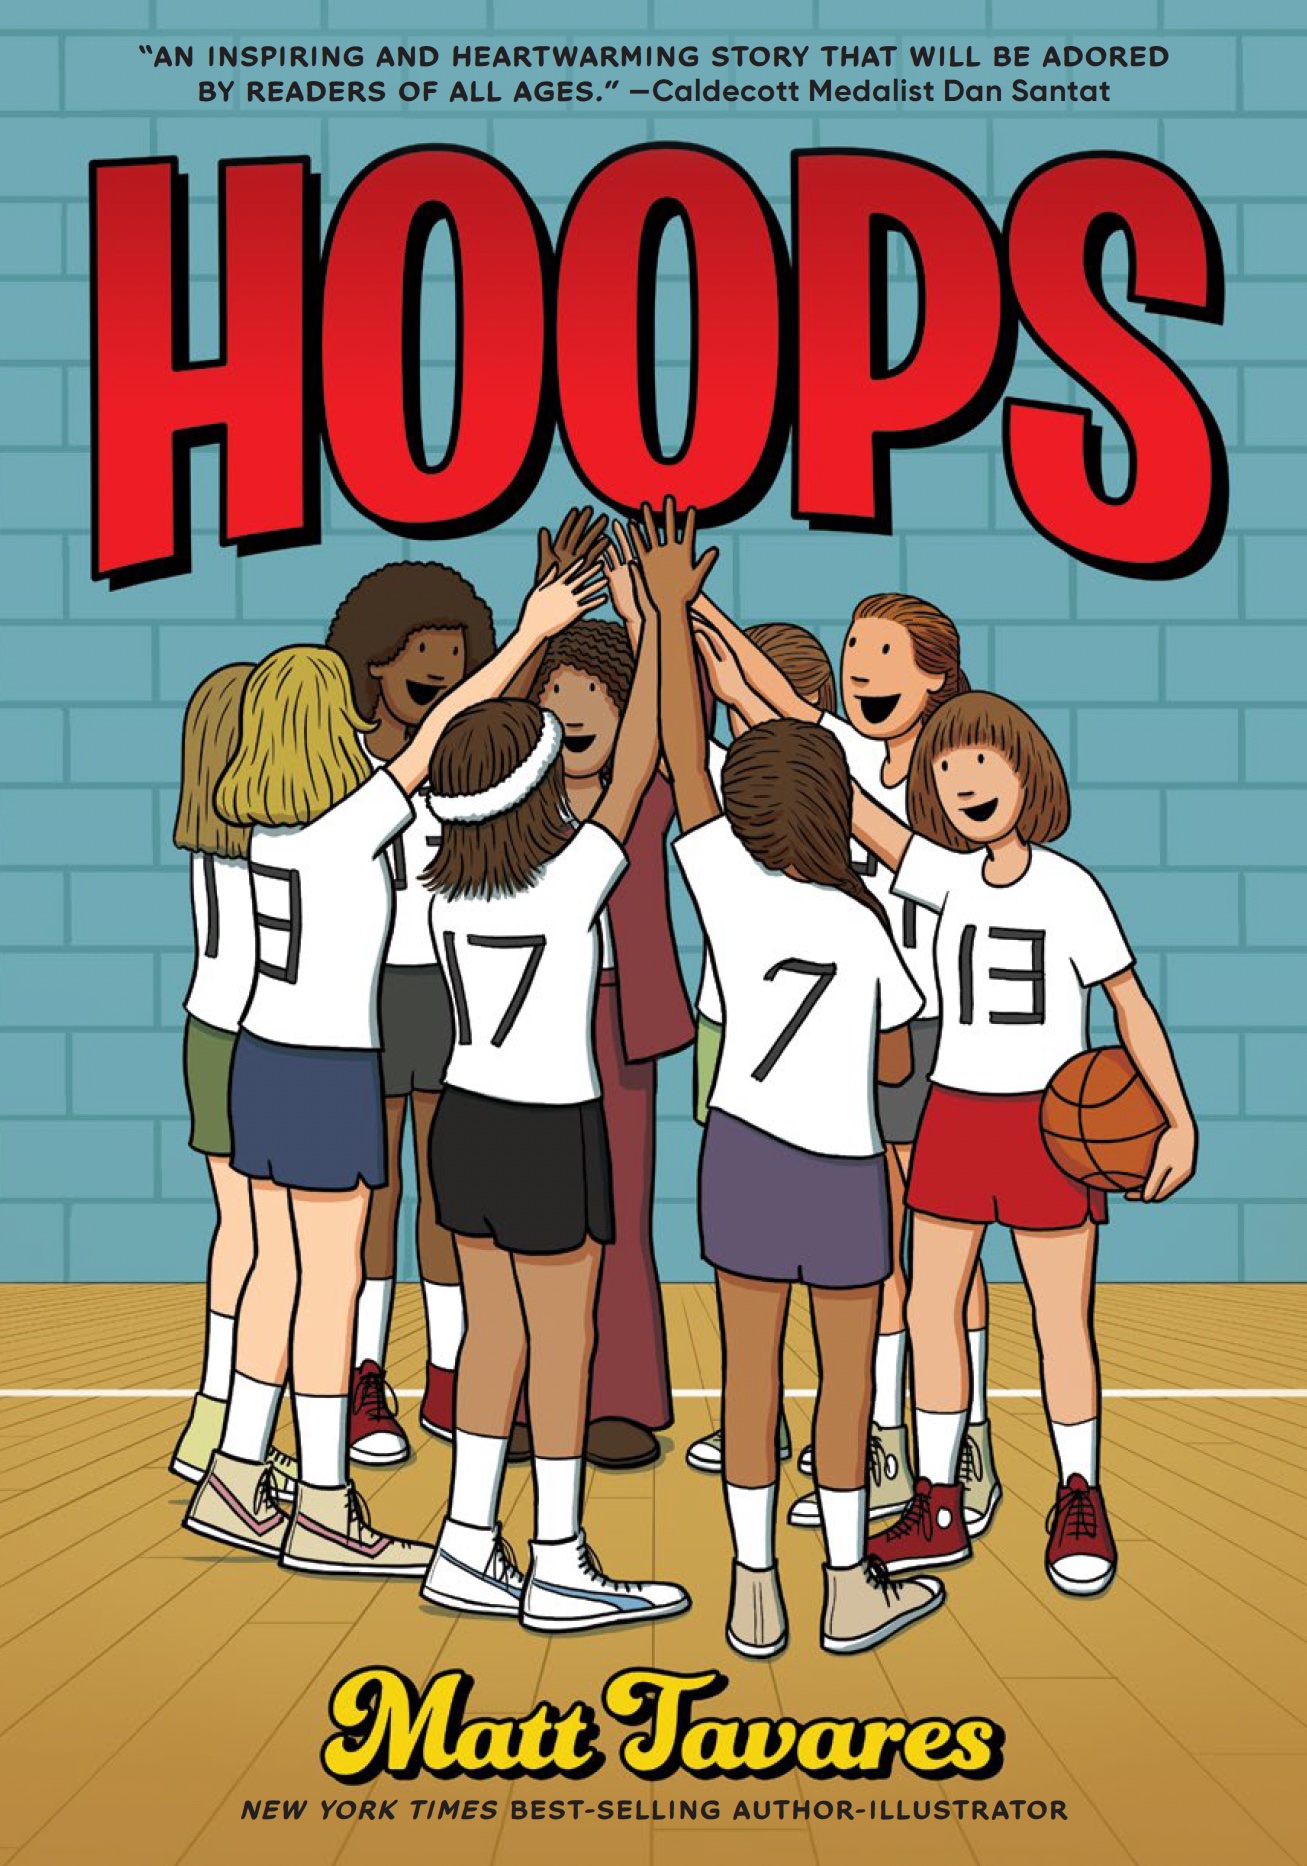 Hoops graphic novel cover by Matt Tavares